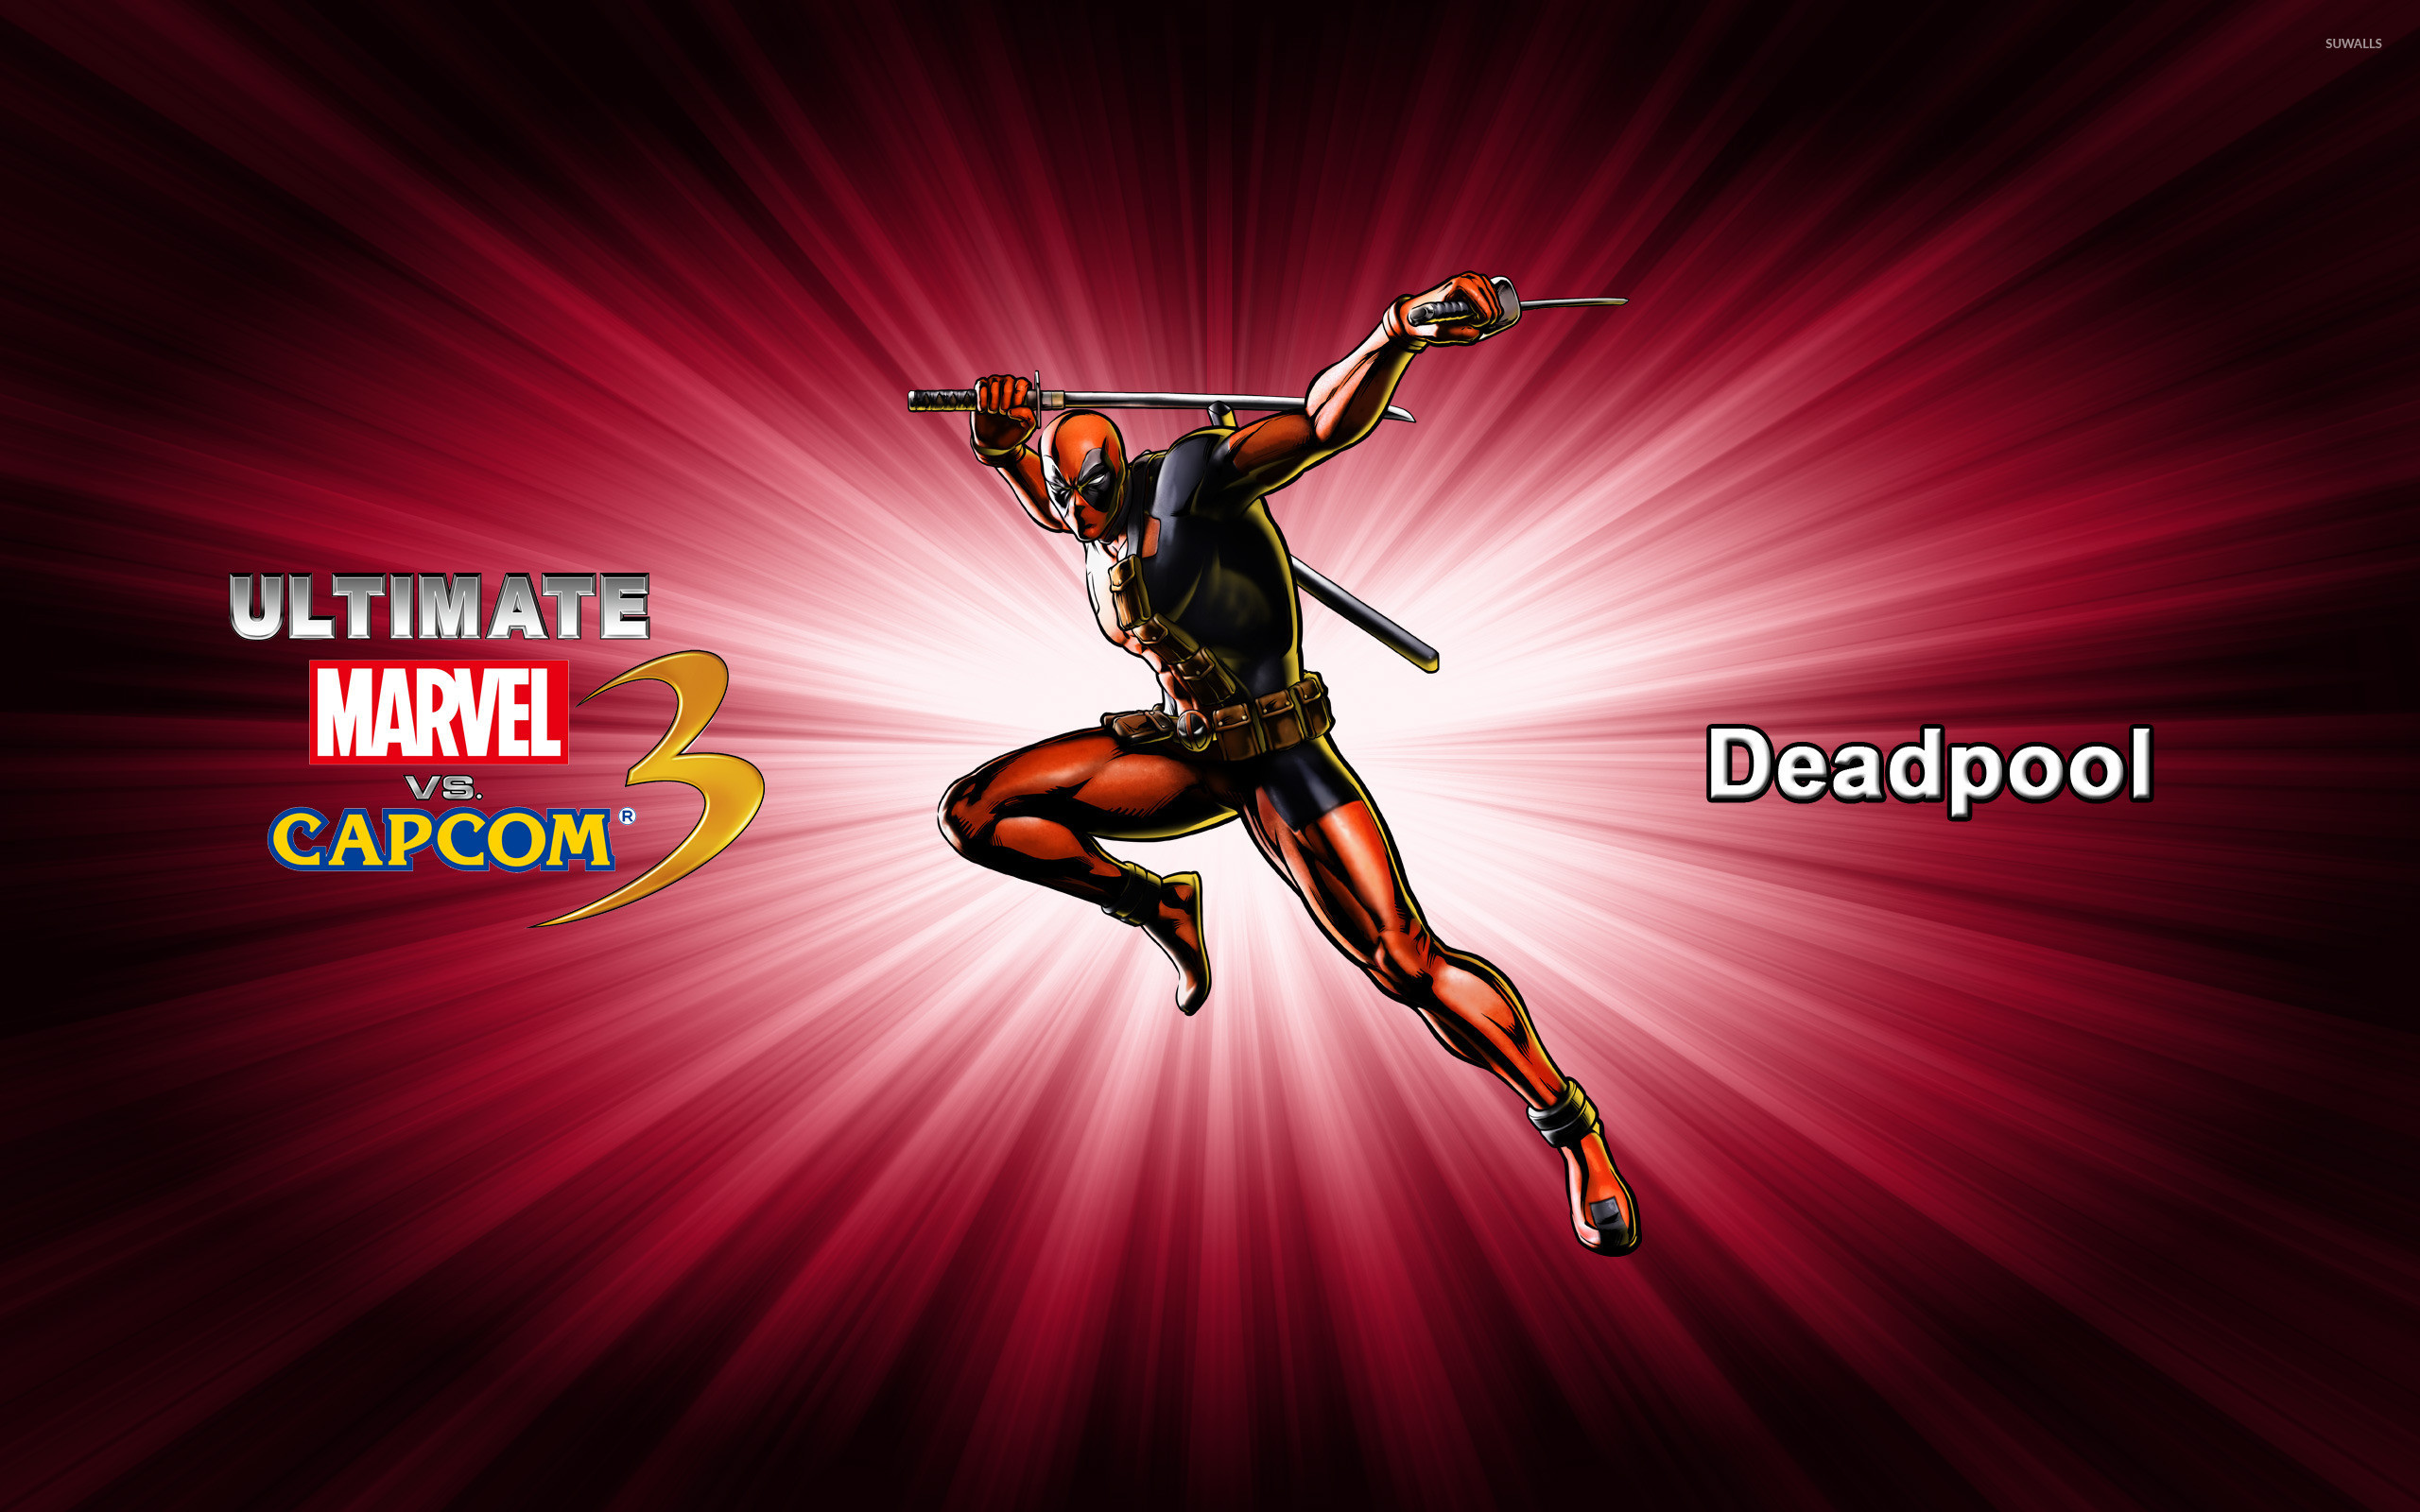 2560x1600 Deadpool - Ultimate Marvel vs. Capcom 3 wallpaper